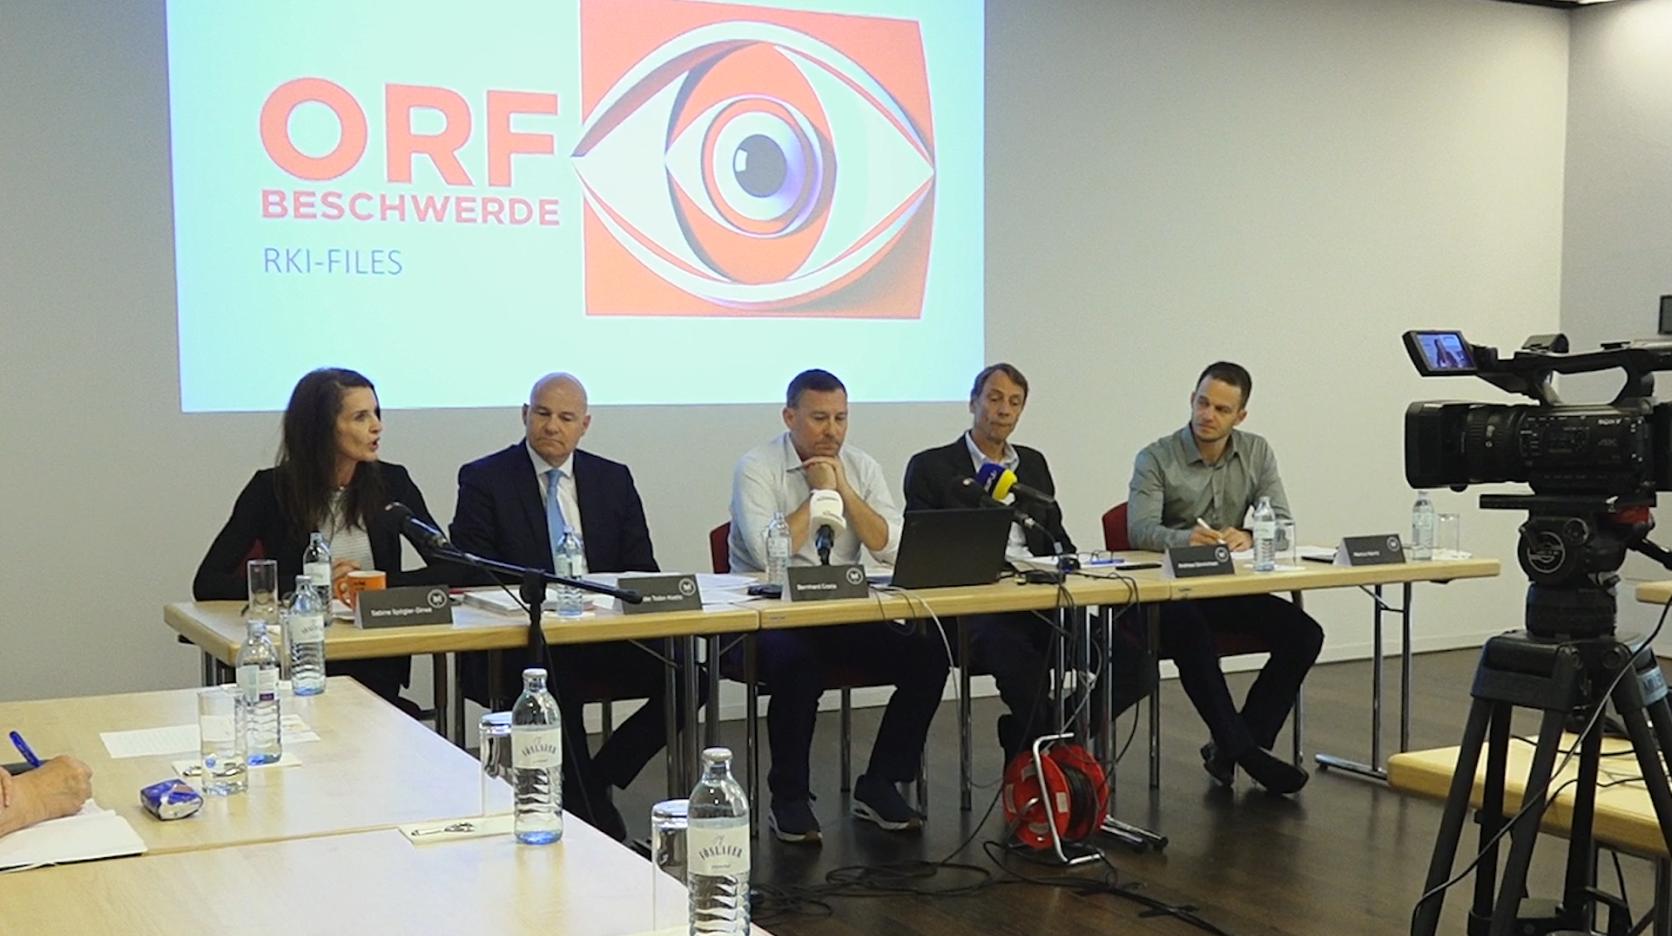 RKI-Protokolle: Beschwerde wegen manipulativer Berichterstattung im ORF